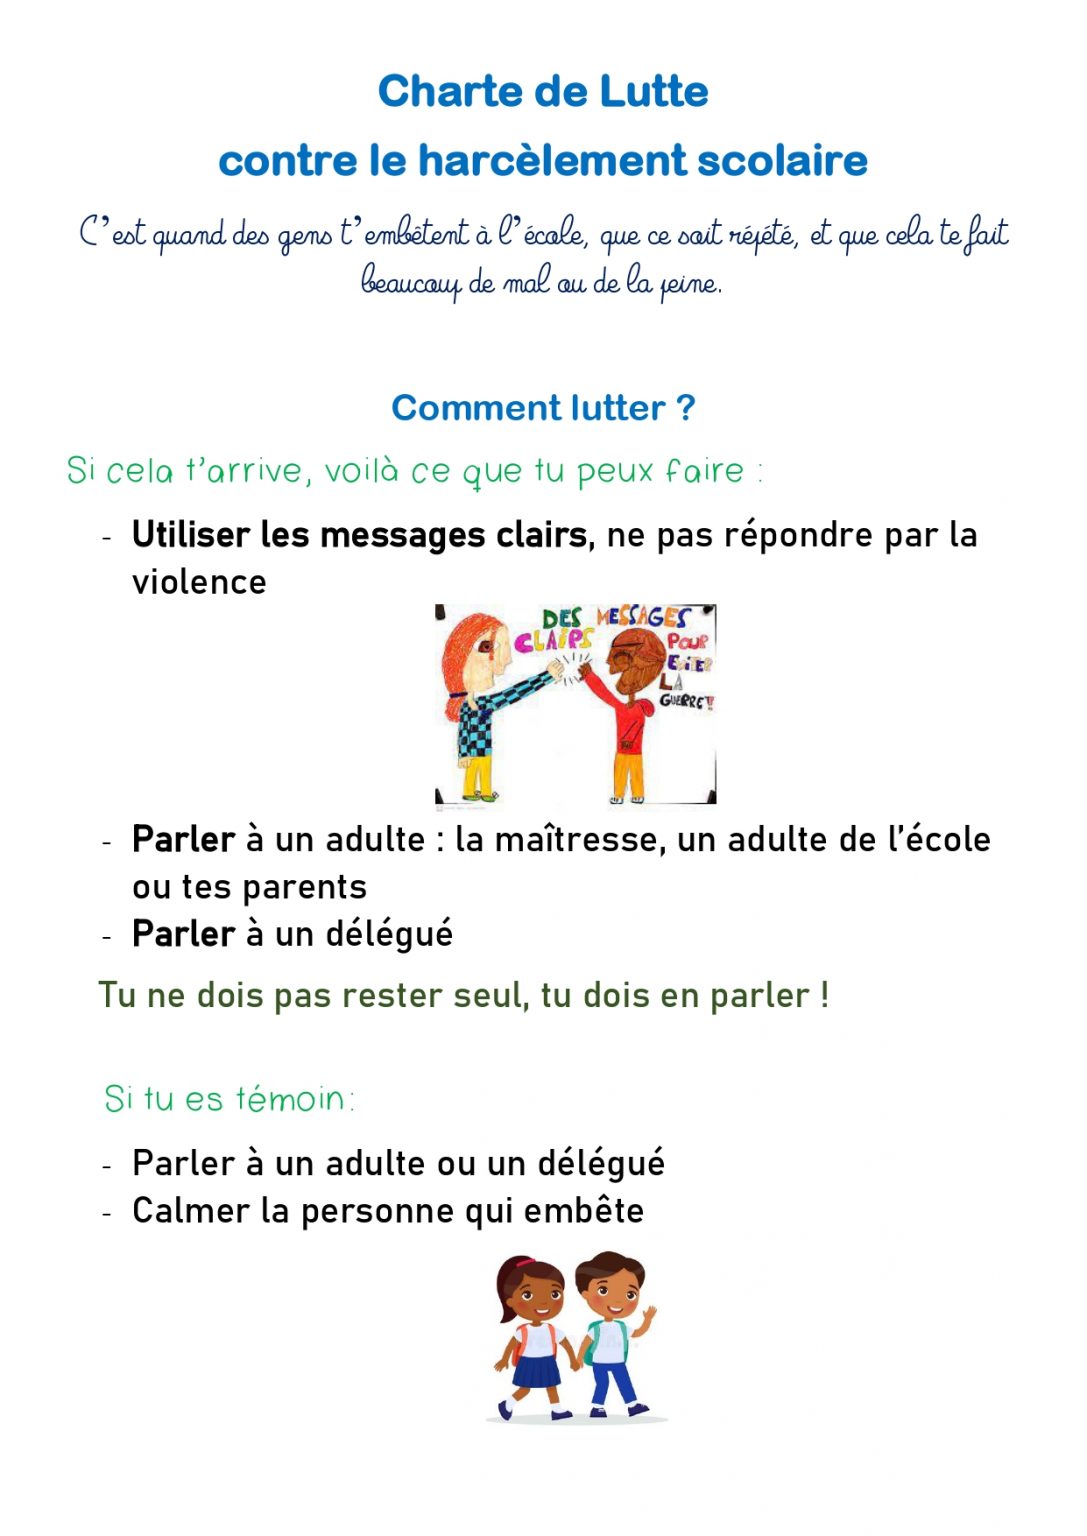 Charte de lutte contre le harcèlement | L'école primaire Jean Scherer ...